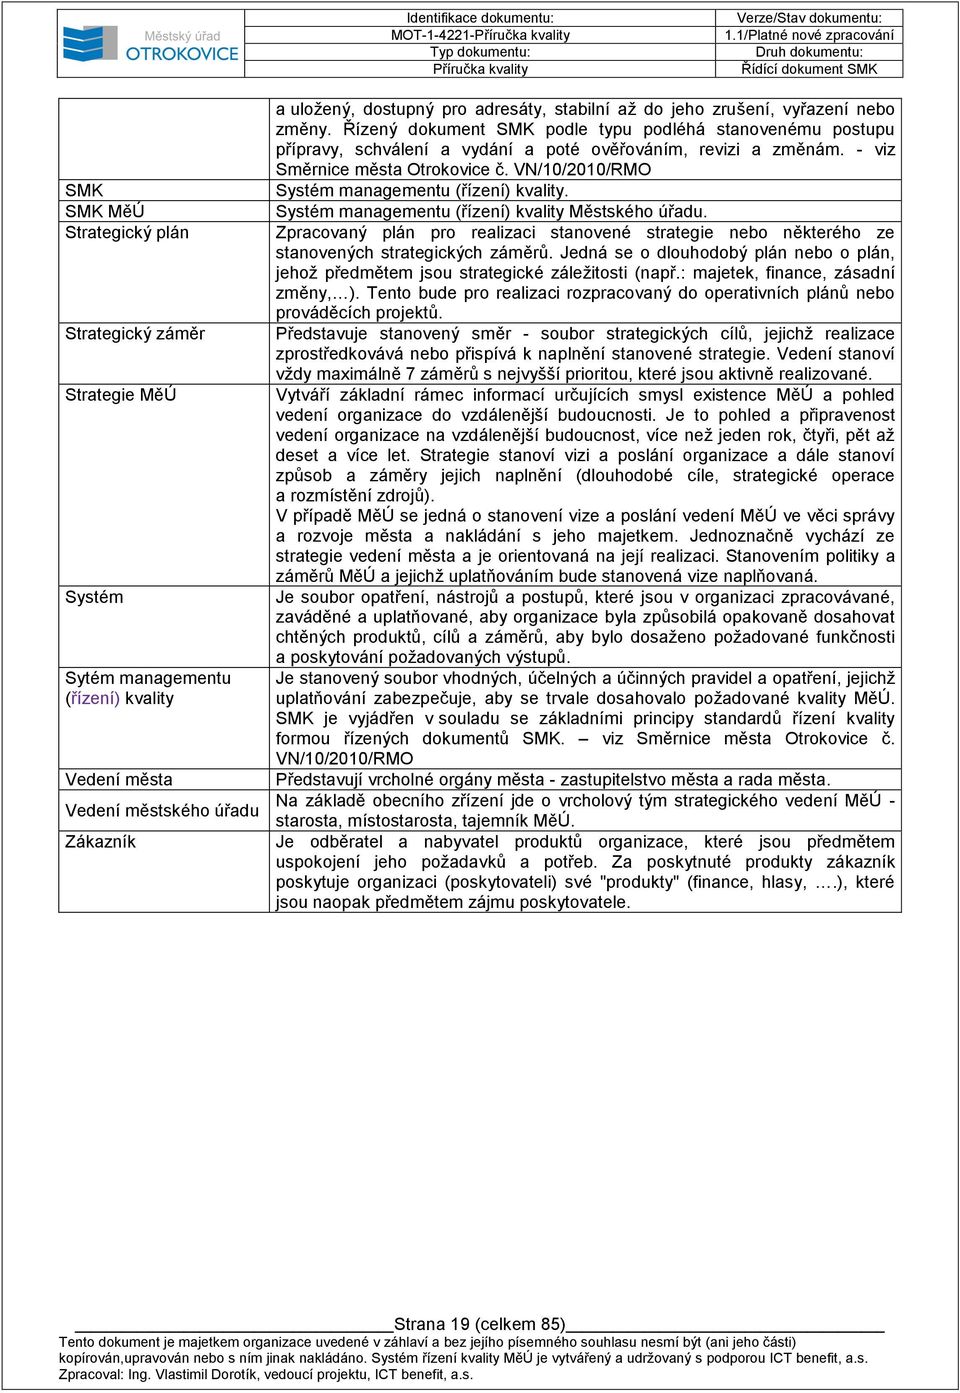 - viz Směrnice města Otrokovice č. VN/10/2010/RMO Systém managementu (řízení) kvality. Systém managementu (řízení) kvality Městského úřadu.